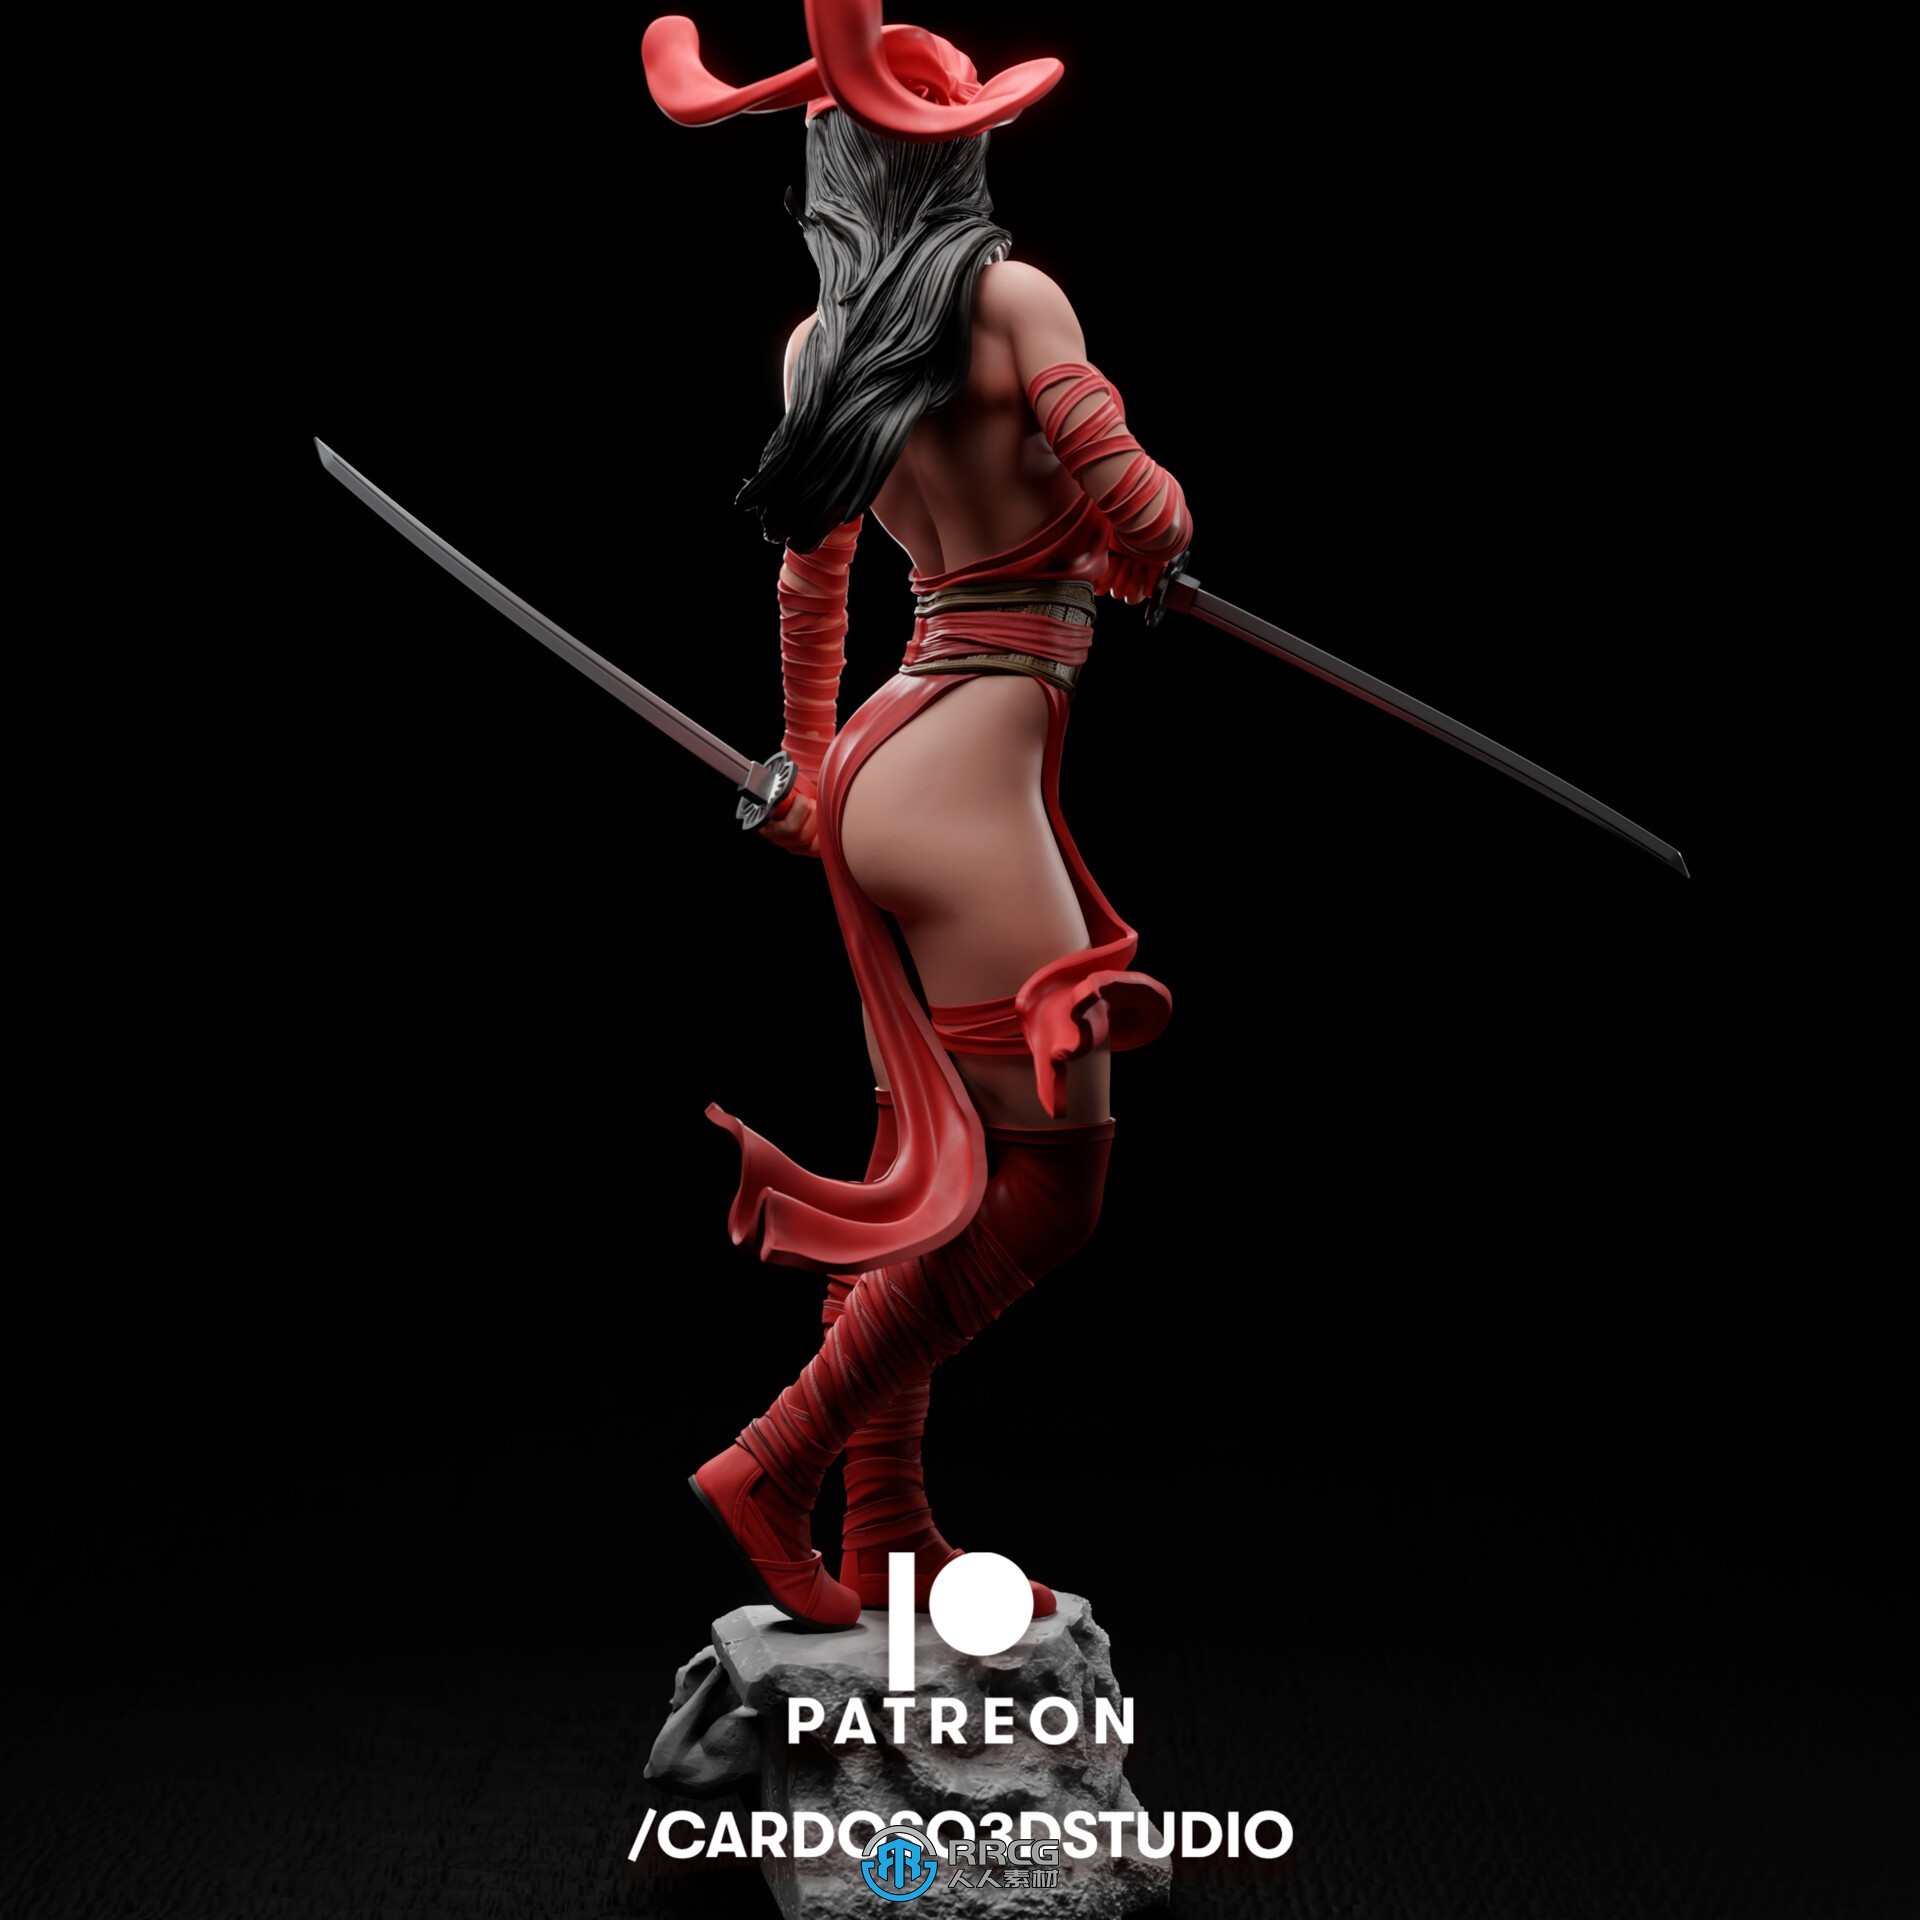 艾丽卡战斗姿势《超胆侠》漫威动漫角色雕塑雕刻3D模型